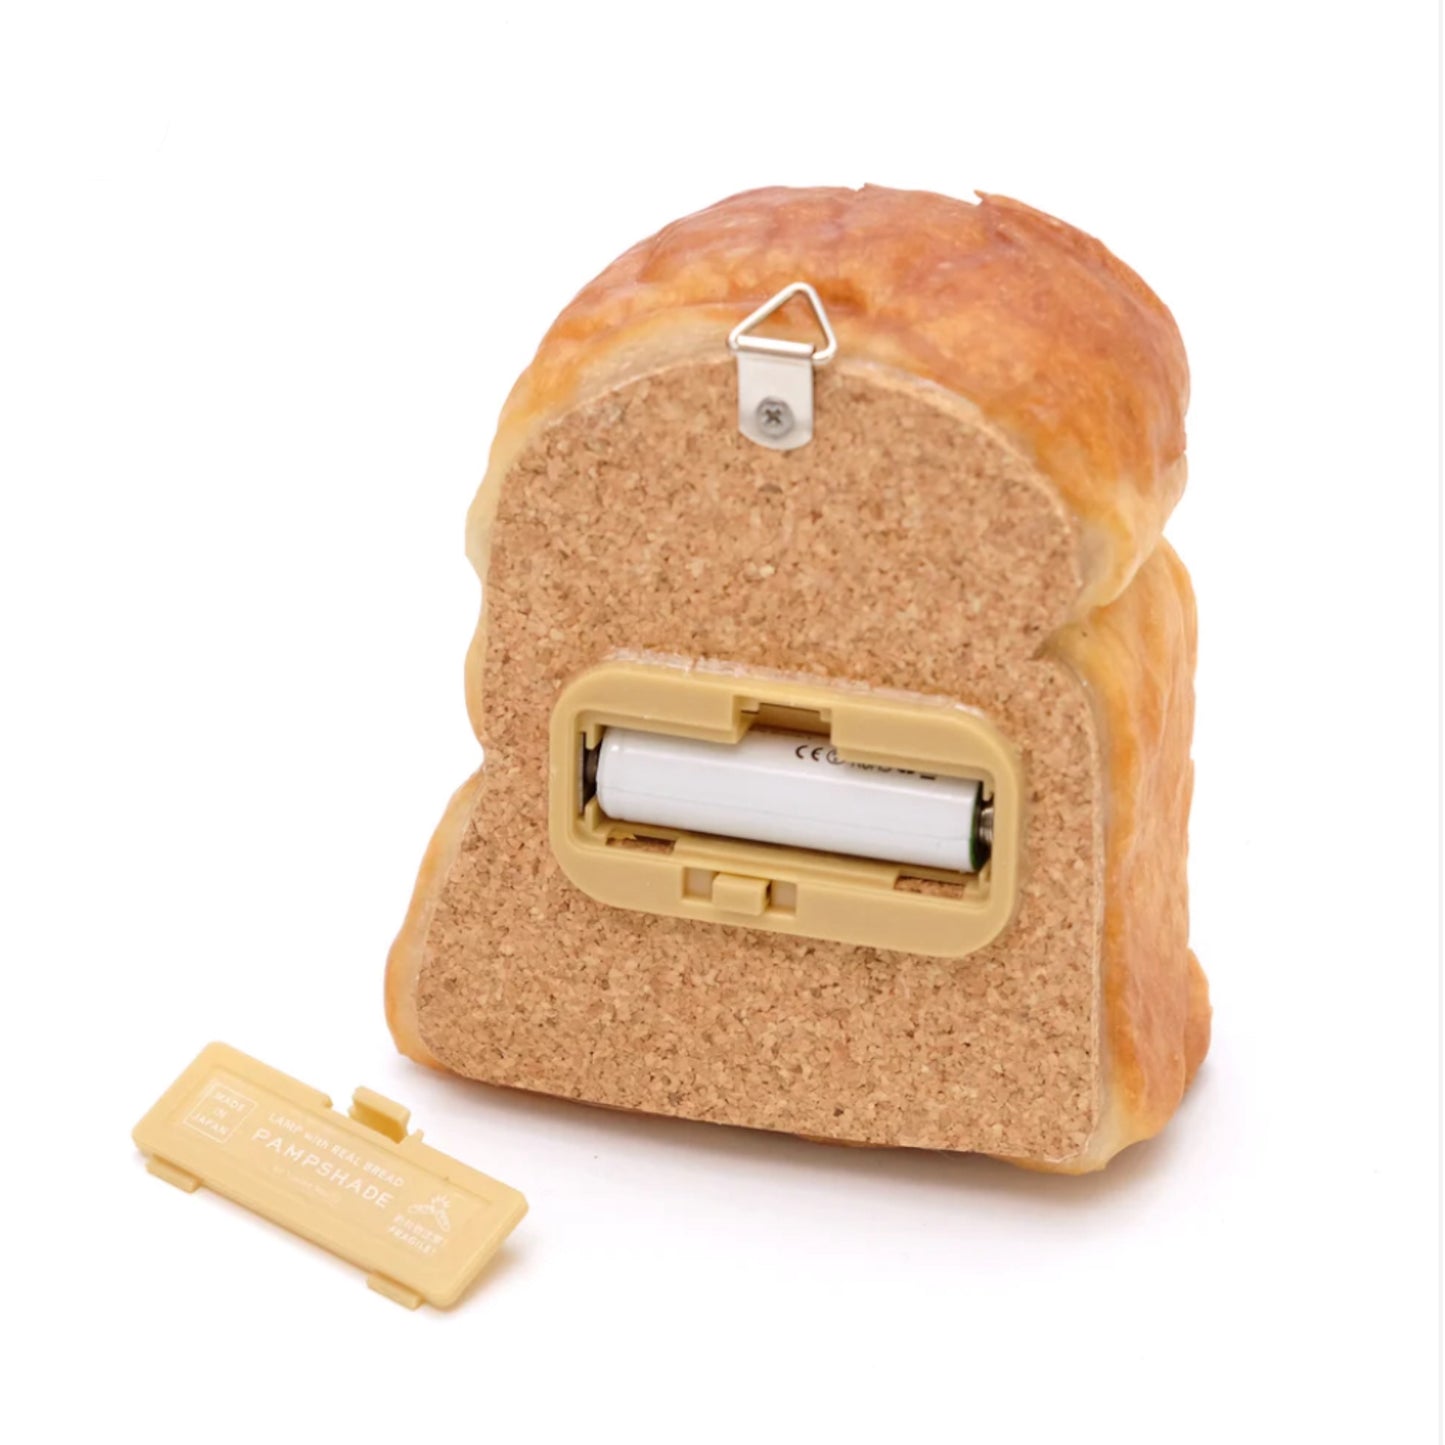 Toast B Bread Lamp